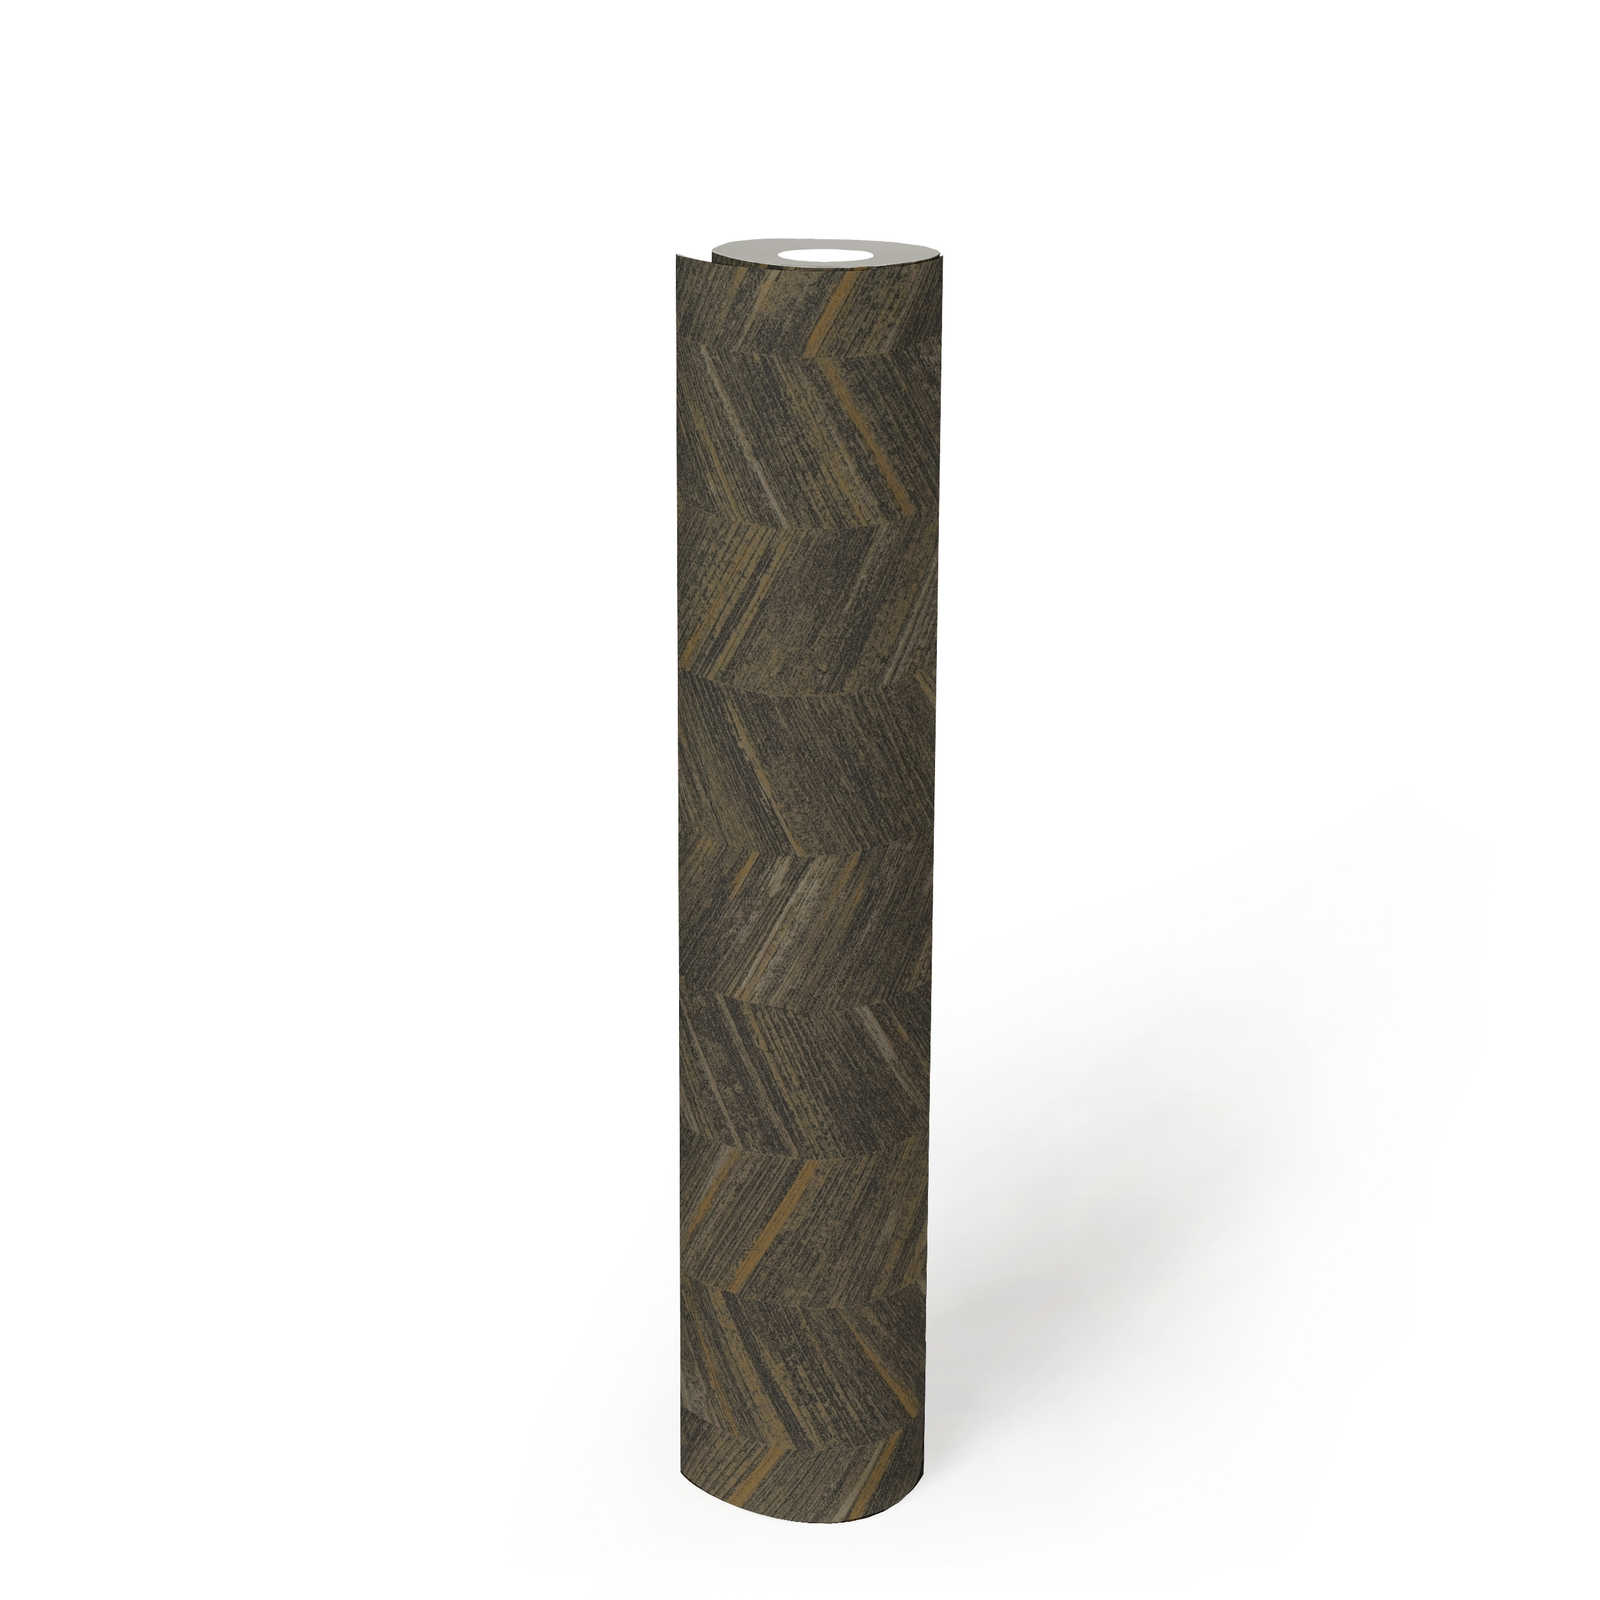             Strukturtapete Vlies mit Holzeffekt & Fischgrätmuster – Braun, Metallic
        